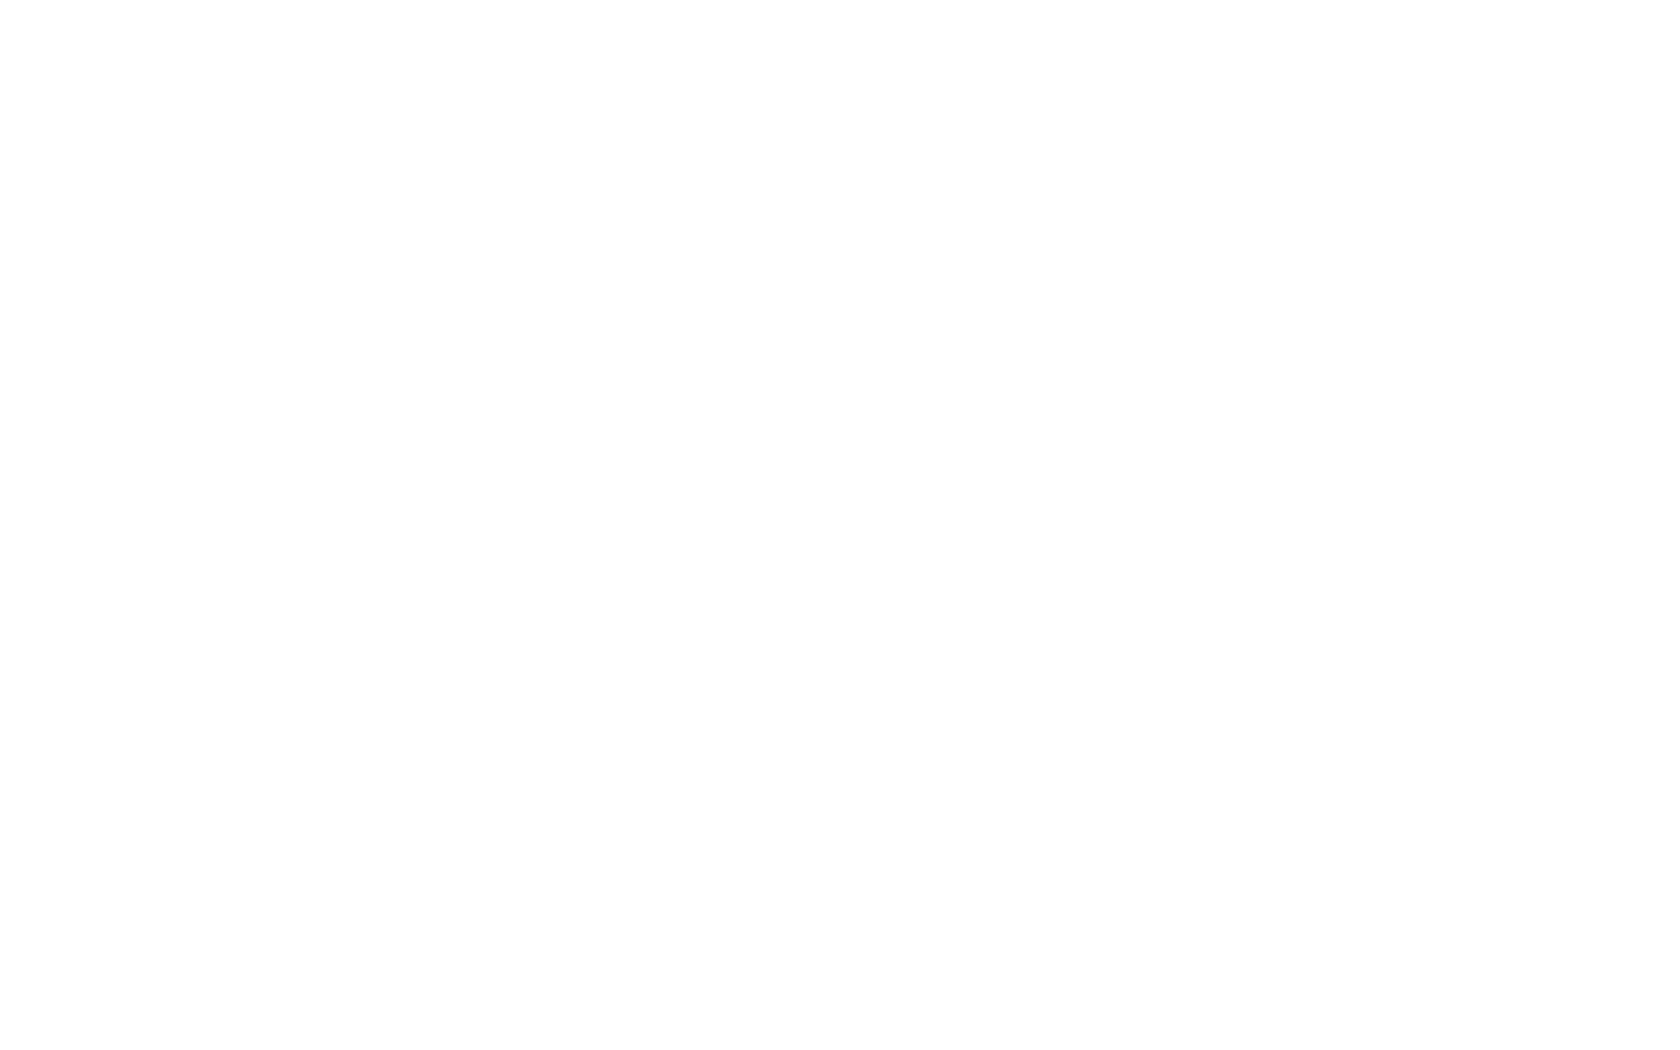 Дизайн логотипа и этикетки консервов Рыбный Четверг. Брендинговое агентство Force Gear.